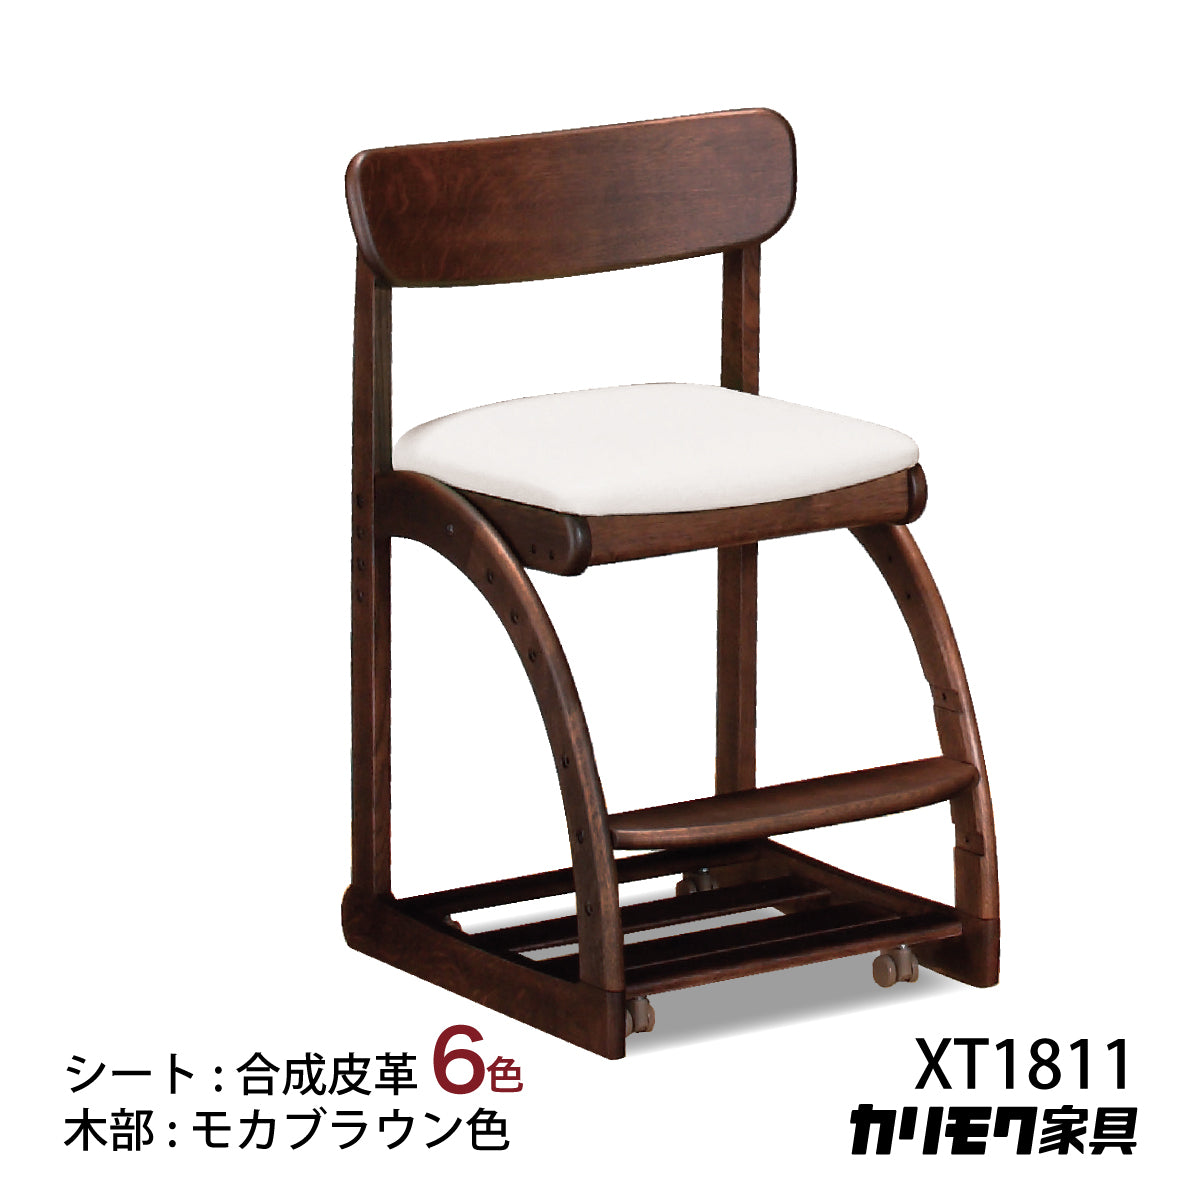 カリモク 学習椅子 XT1811 モカブラウン色 デスクチェア 子供椅子 ...